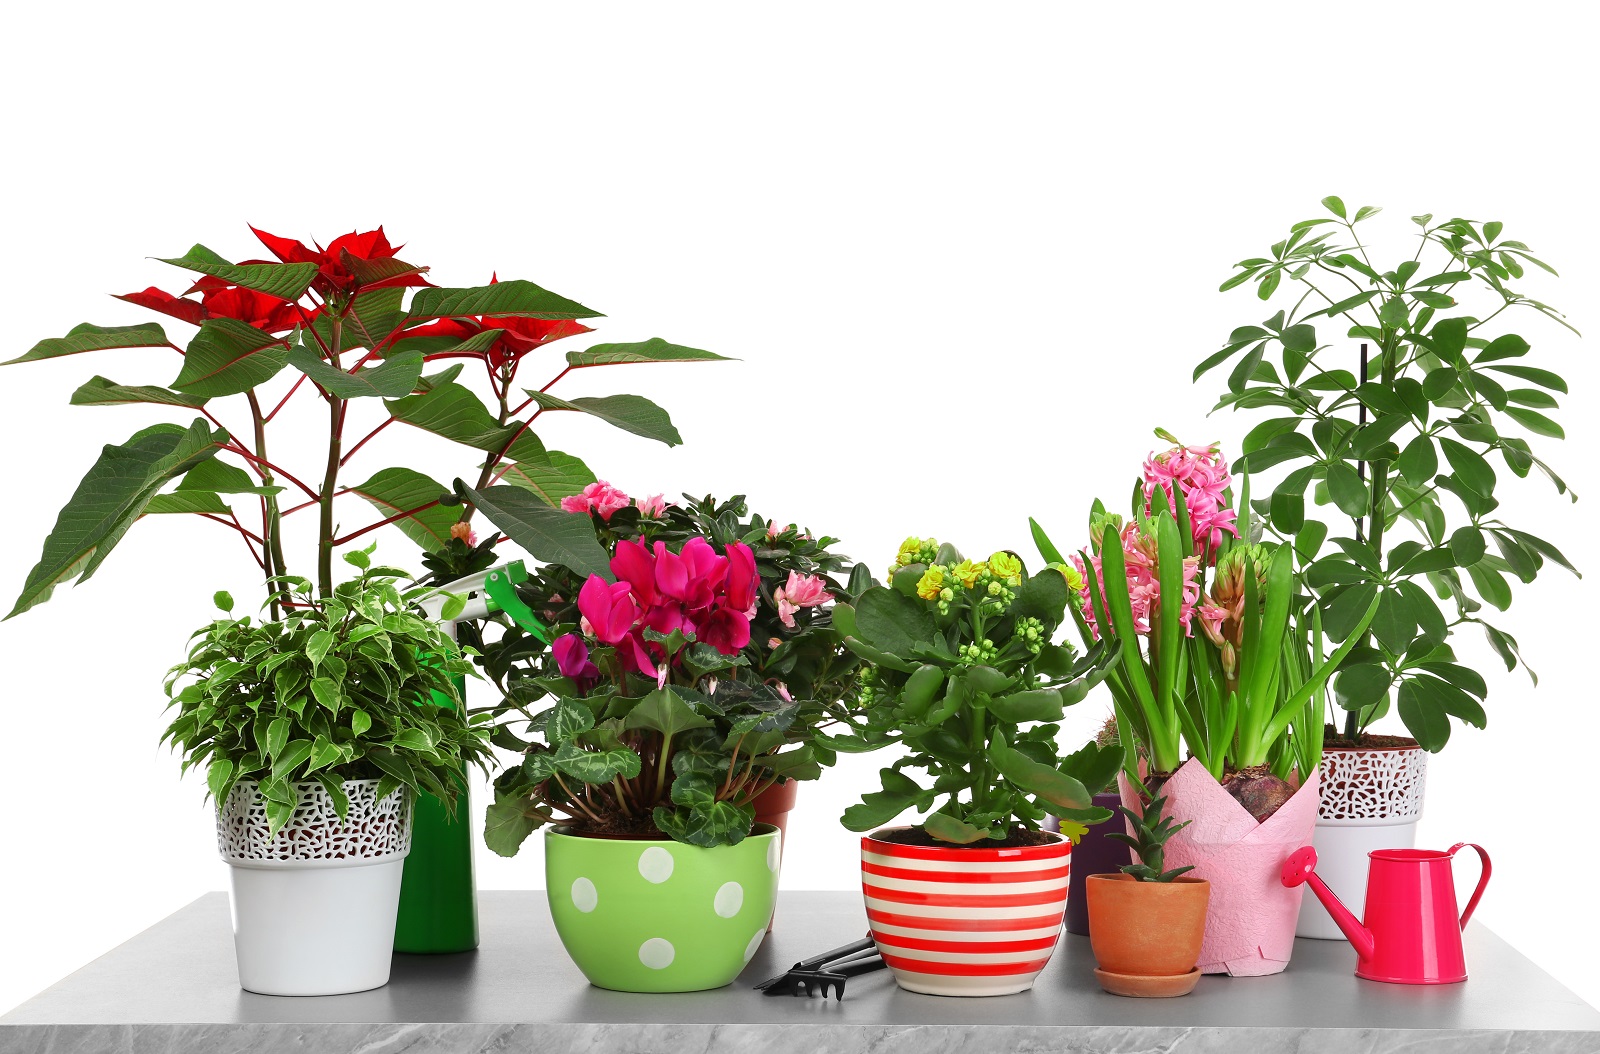 Végétaliser votre intérieur en hiver avec des plantes vertes et fleuries.&nbsp;© Africa Studio, Adobe Stock